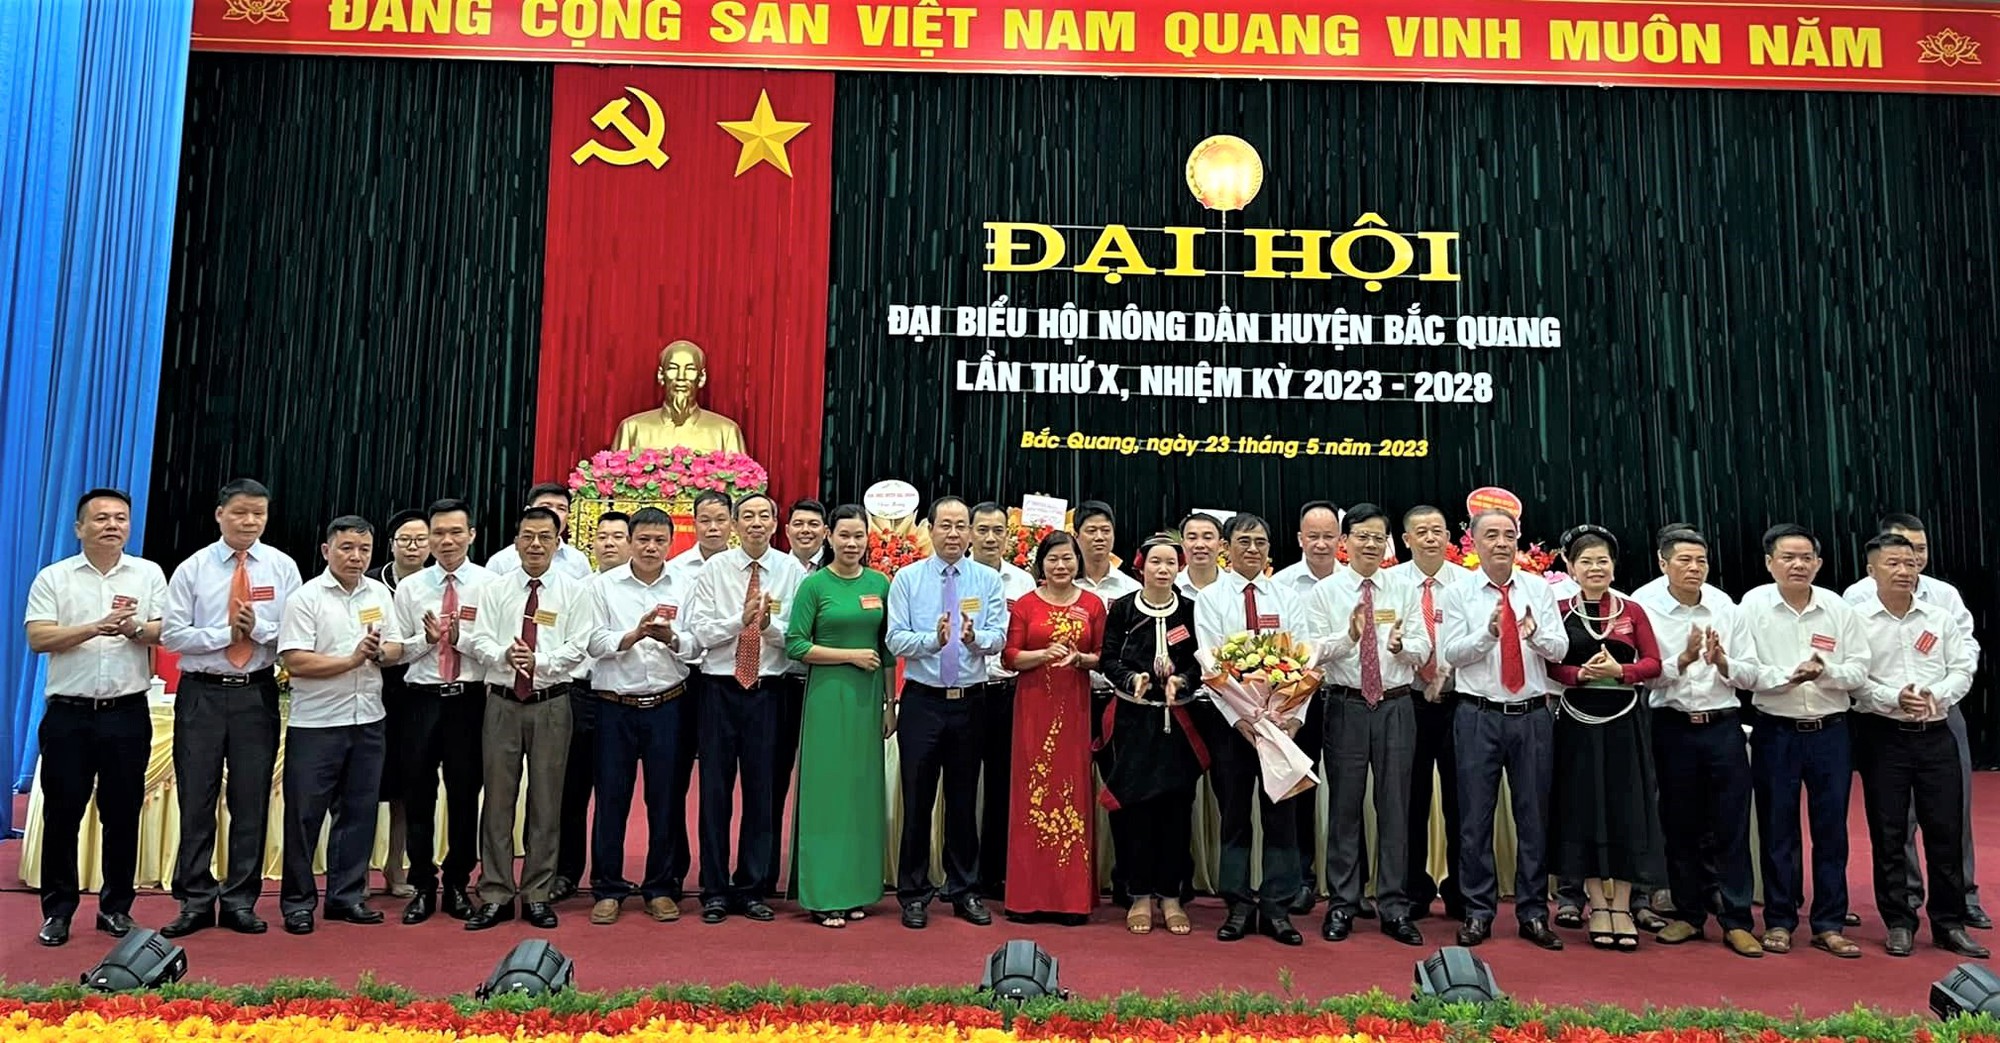 Đại hội Hội Nông dân huyện Bắc Quang (Hà Giang): Trong 5 năm số hộ thu nhập trên 1 tỷ đồng/năm tăng 3 lần - Ảnh 3.